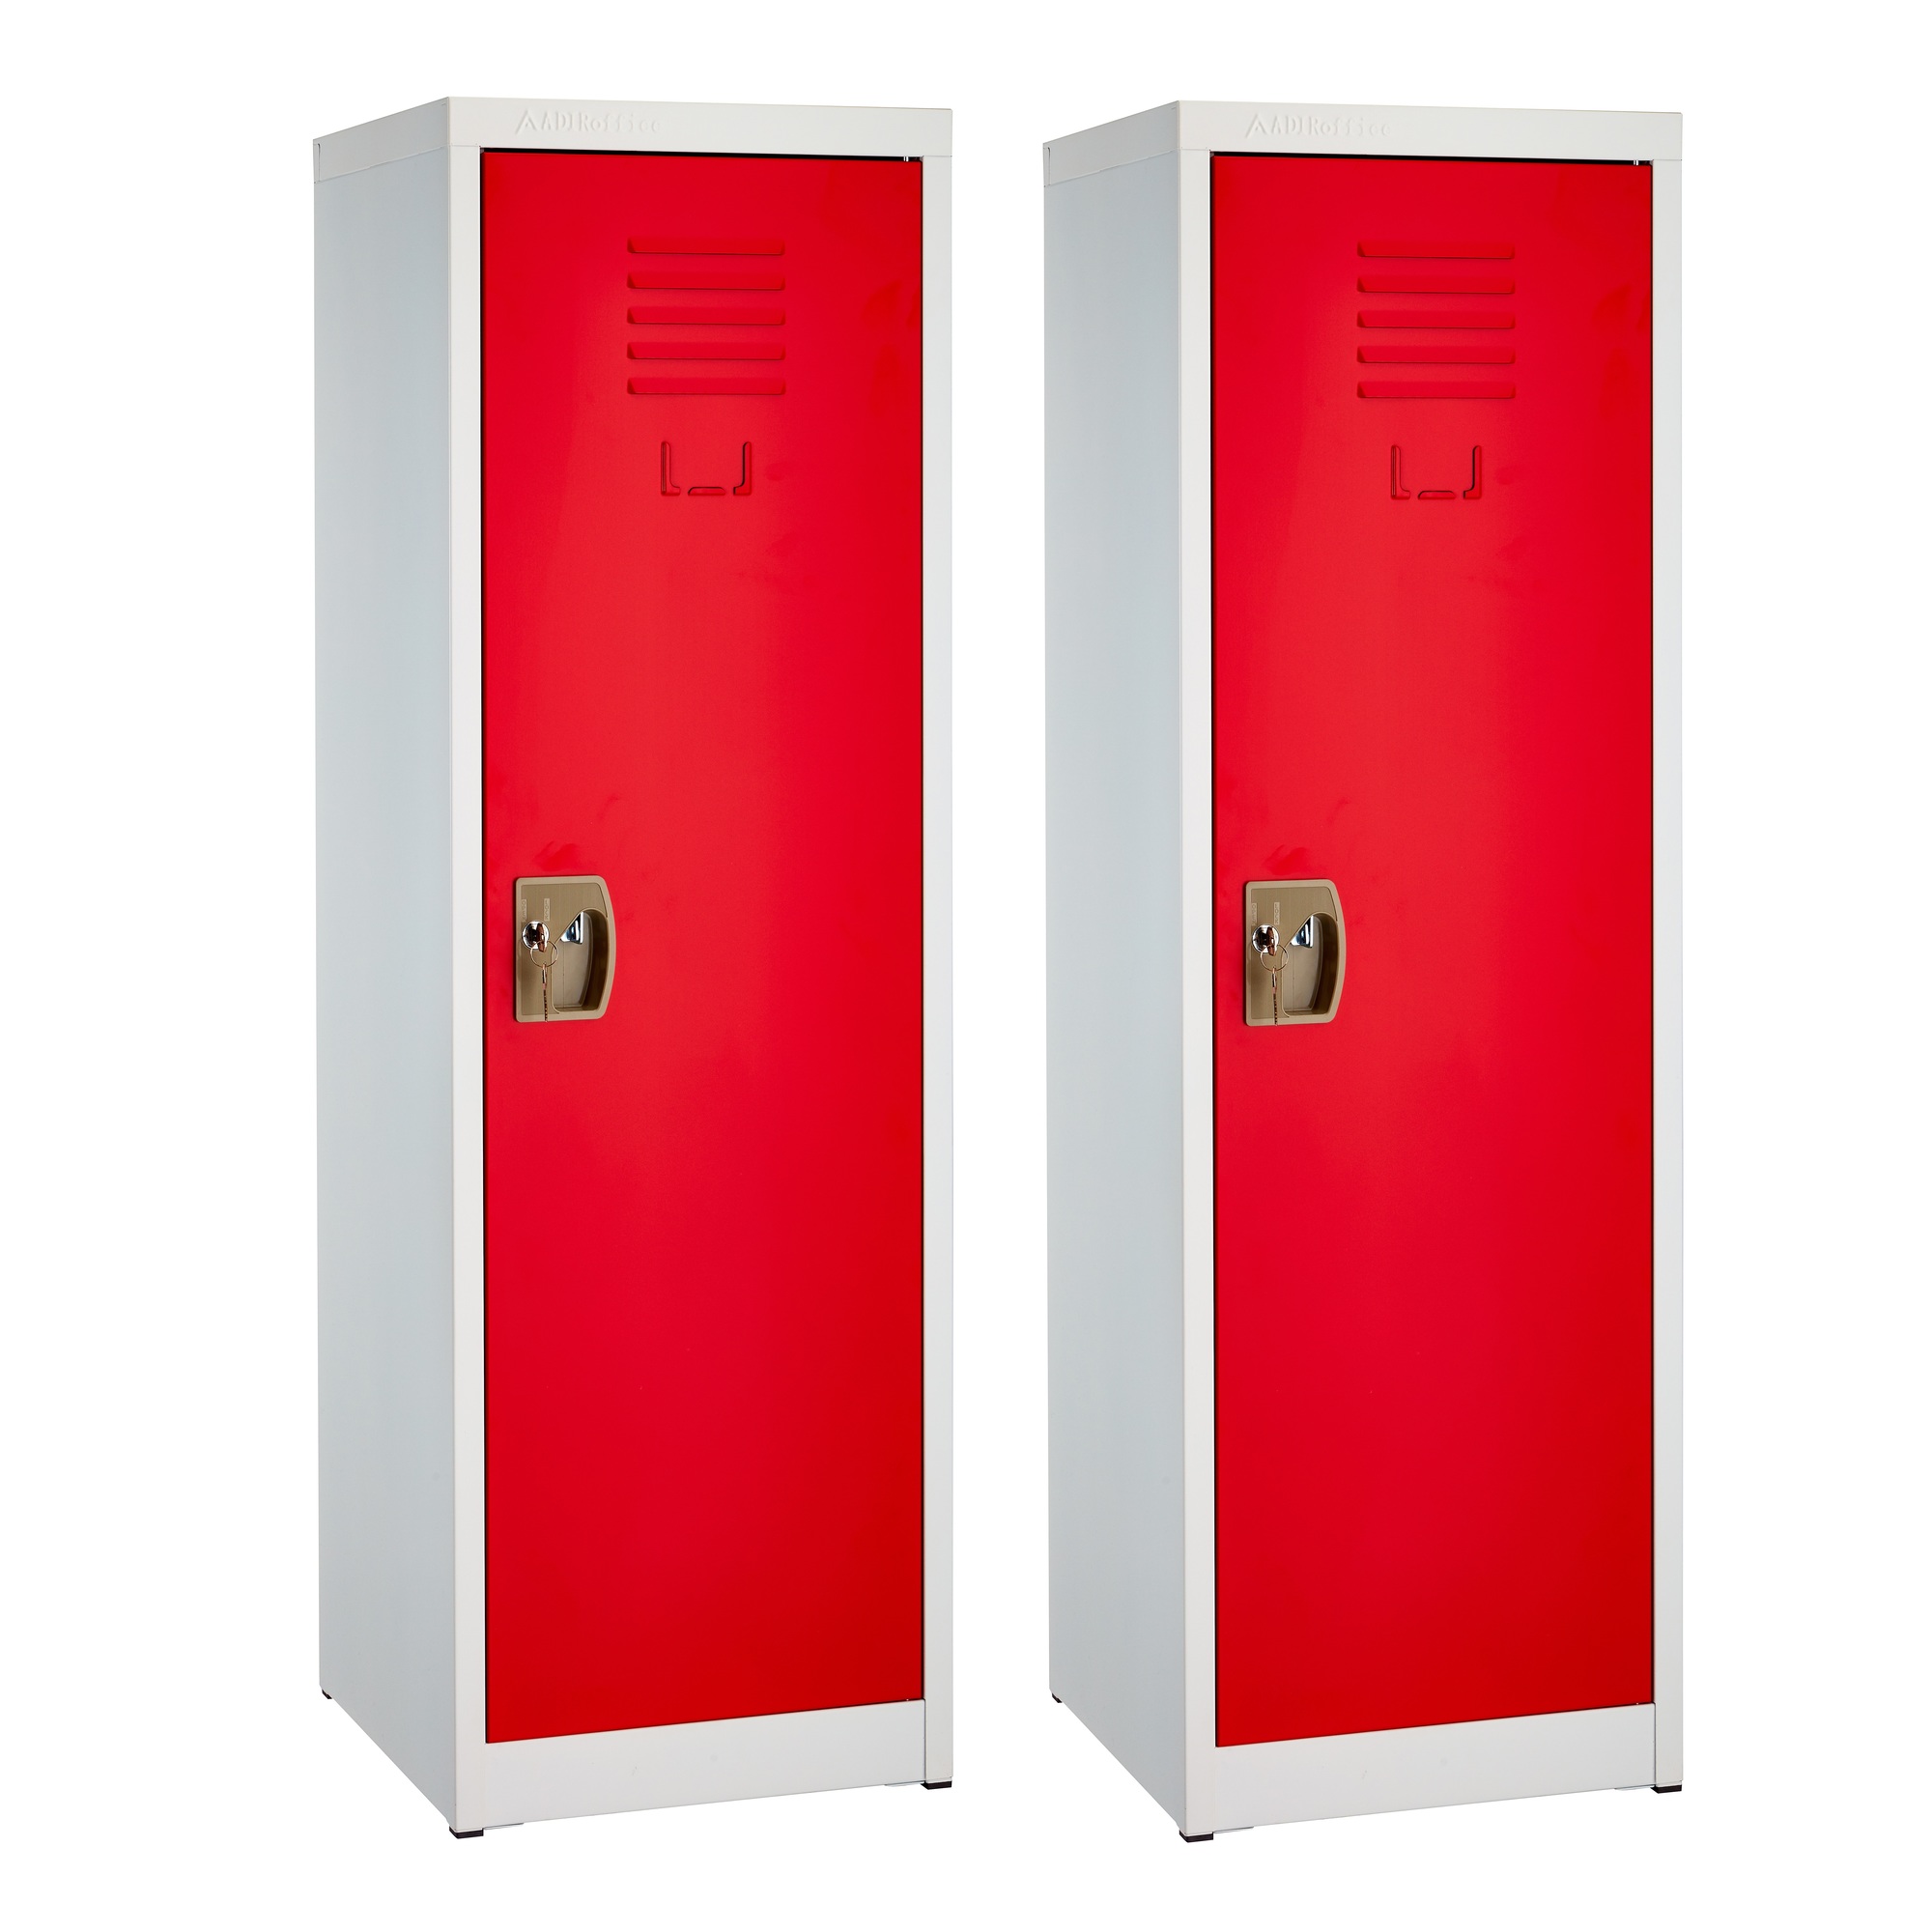 Alpine, 48ft.' Single Tier Locker for Kids â Red, 2-Pack, Height 48 in, Width 15 in, Color Red, Model ADI629-01-RED-2PK